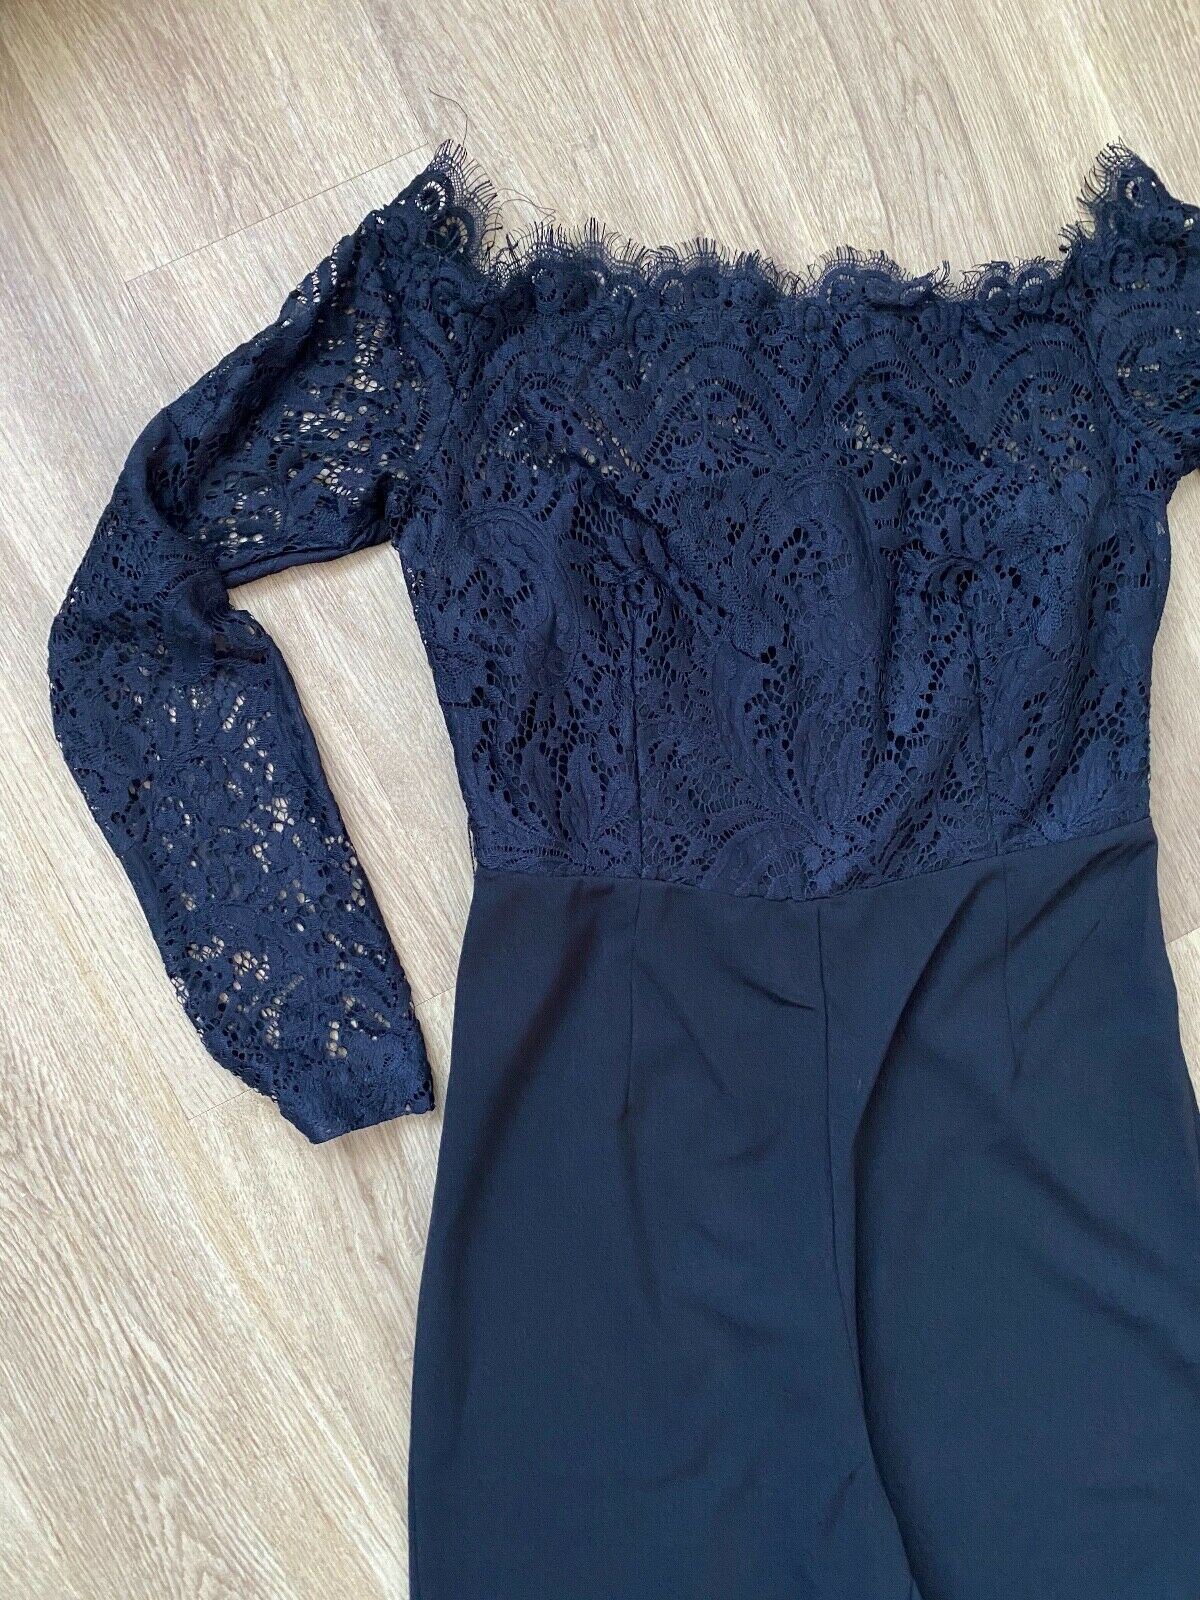 SHEIN Off Shoulder Lace Bodice Black Jumpsuit Size S 8 UK Black or Burgundy